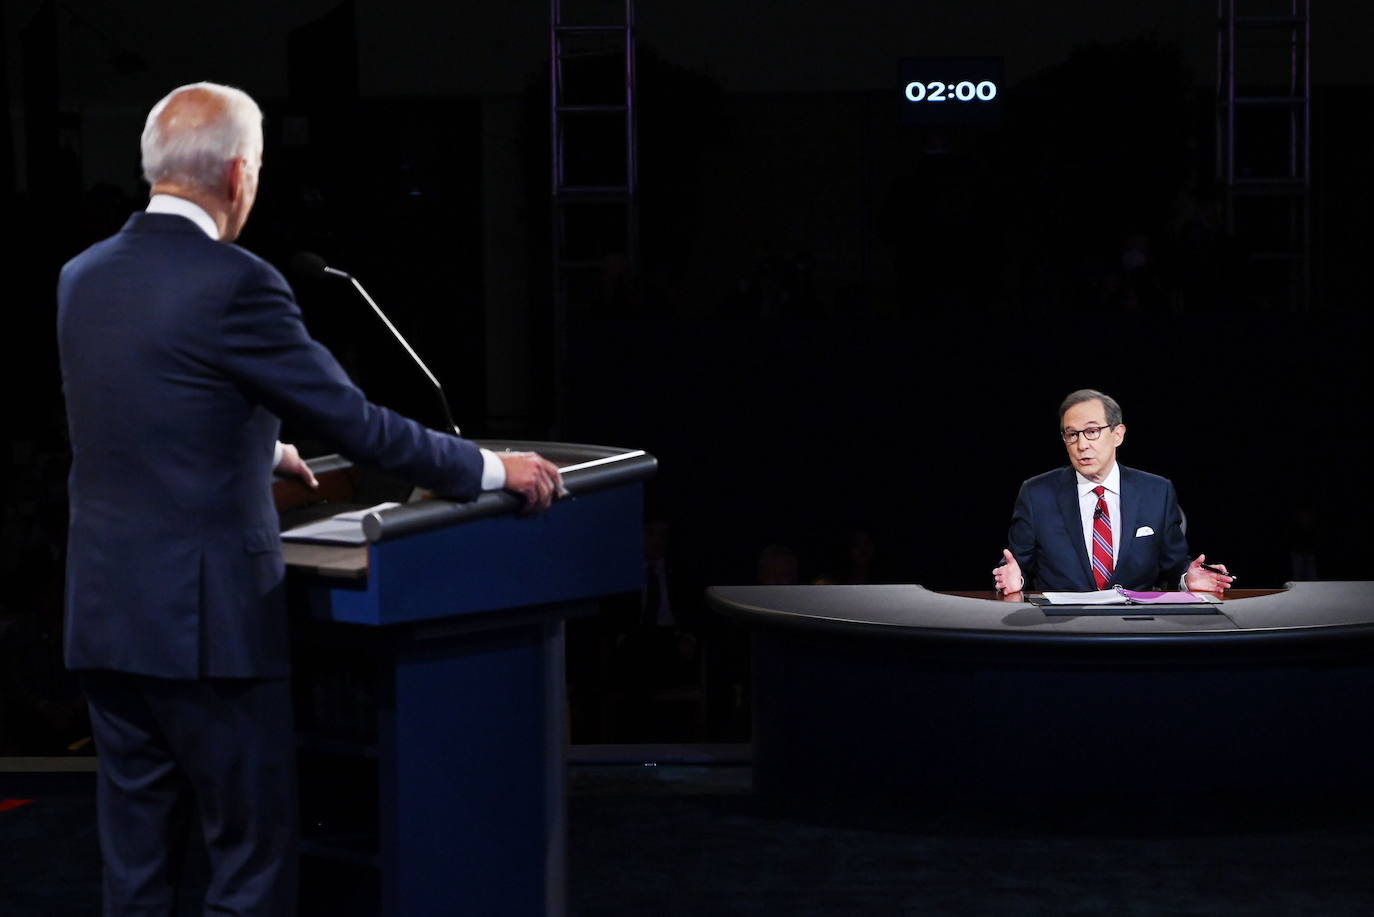 El candidato demócrata Joe Biden, durante un momento de su intervención en el debate.